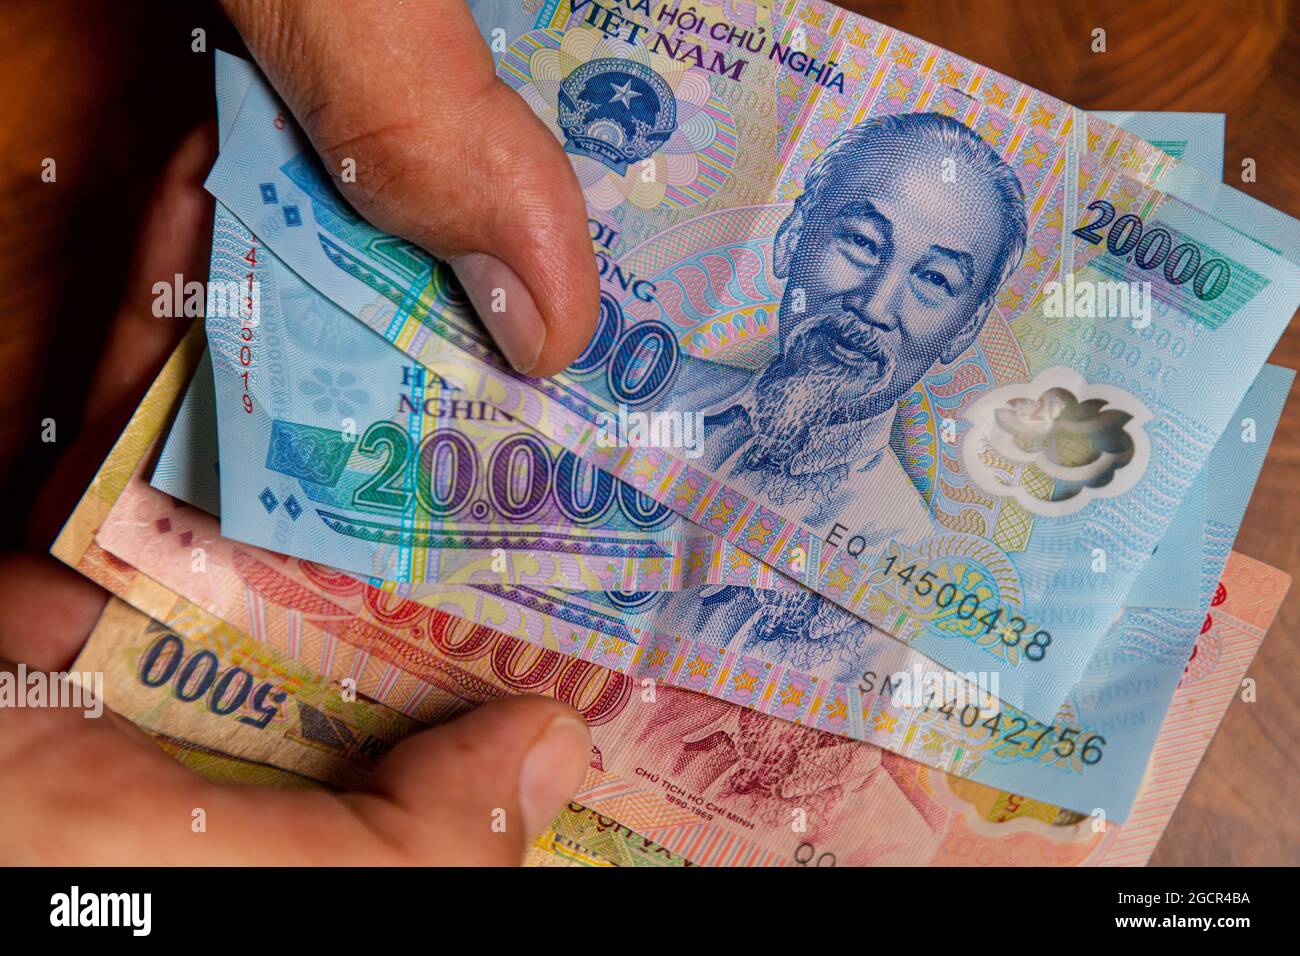 La main masculine tient un fan de Vietnames Dong billet, la monnaie du Vietnam. Gros plan Polymer Money du Vietnam. 20000 Dong ou VND dans la main mâle. En fro Banque D'Images